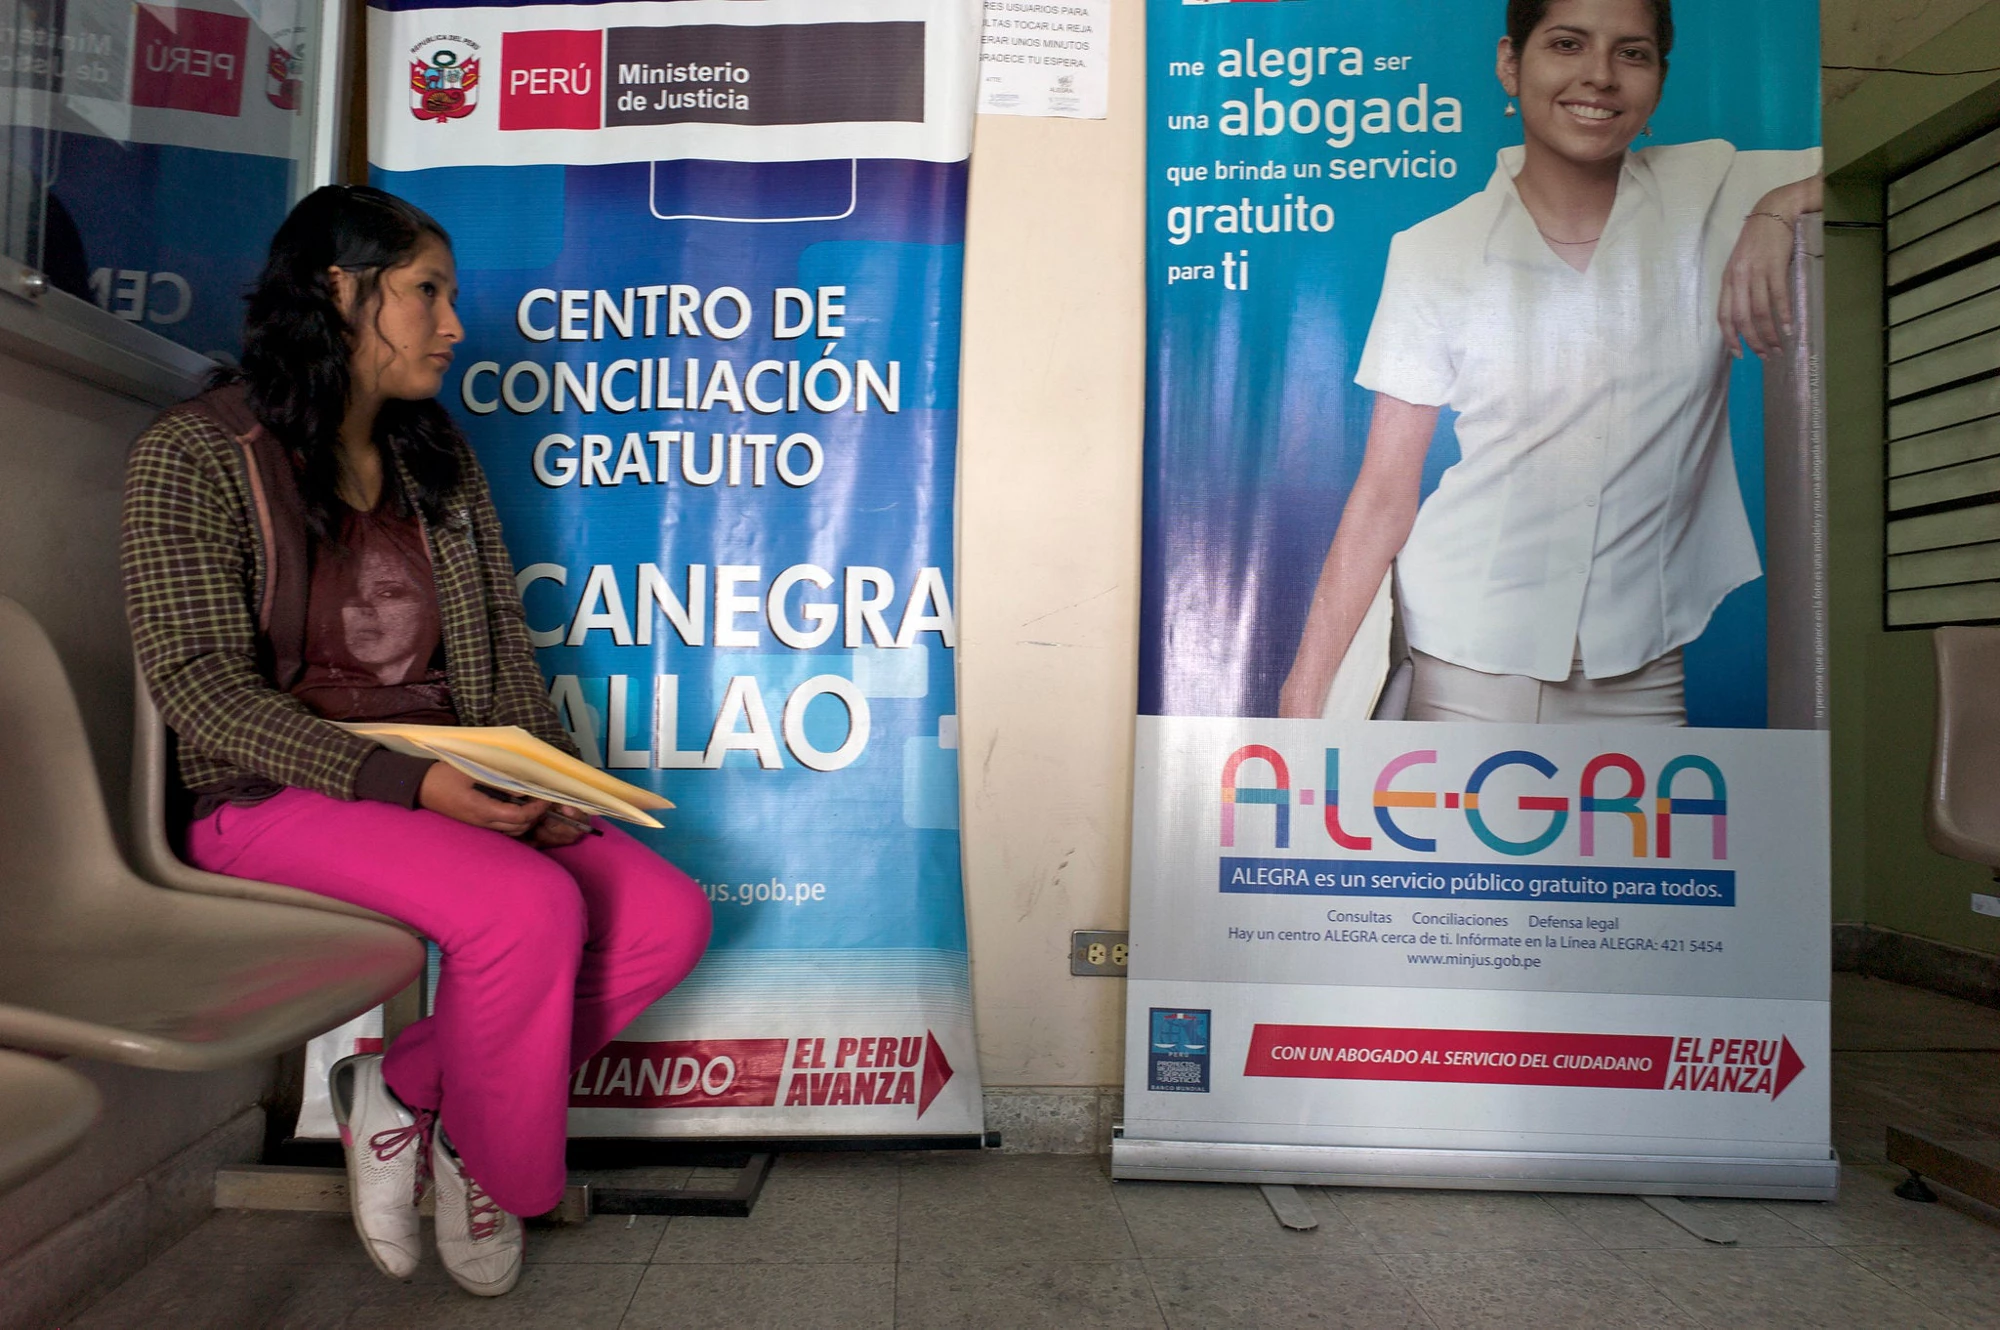 Woman in a public office in Peru.